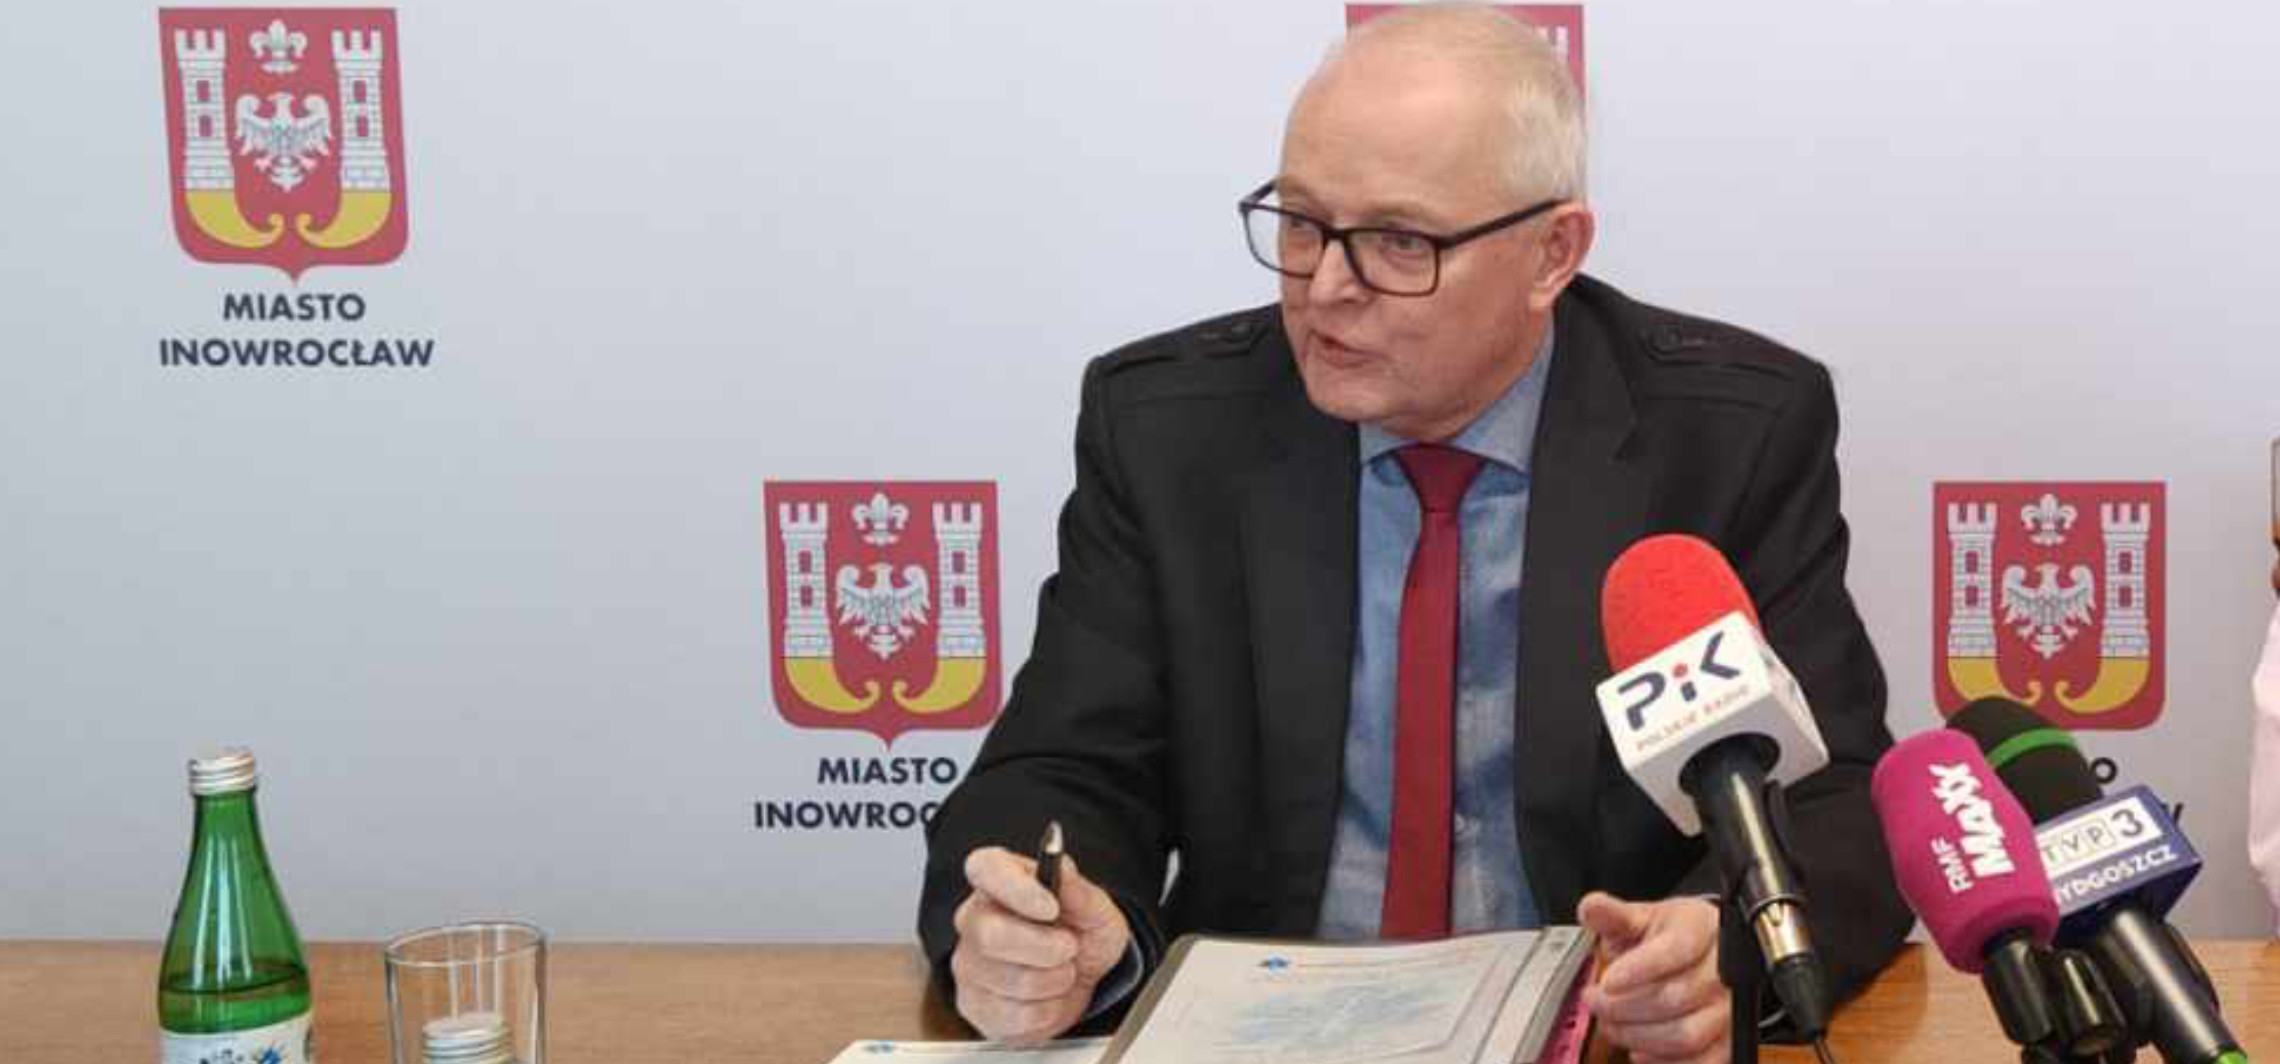 Inowrocław - Radni apelują. Wojciech Piniewski w roli komisarza?